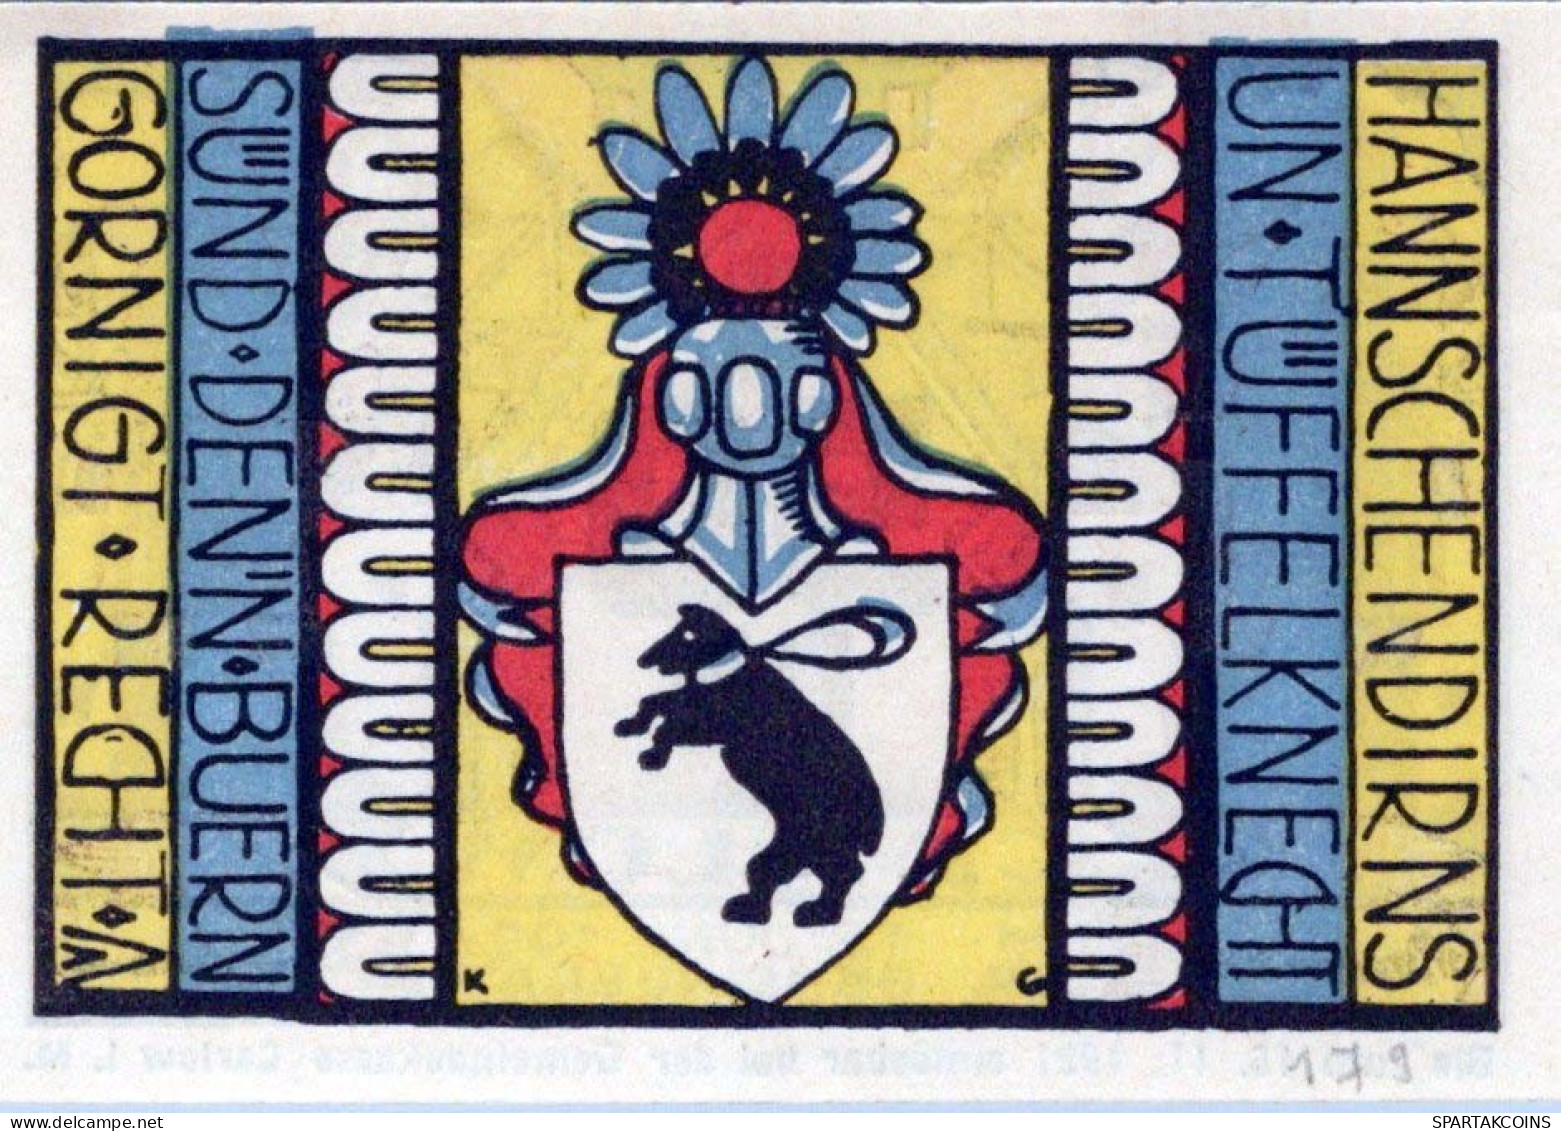 50 PFENNIG 1921 Stadt CARLOW Mecklenburg-Strelitz UNC DEUTSCHLAND Notgeld #PA377 - [11] Local Banknote Issues